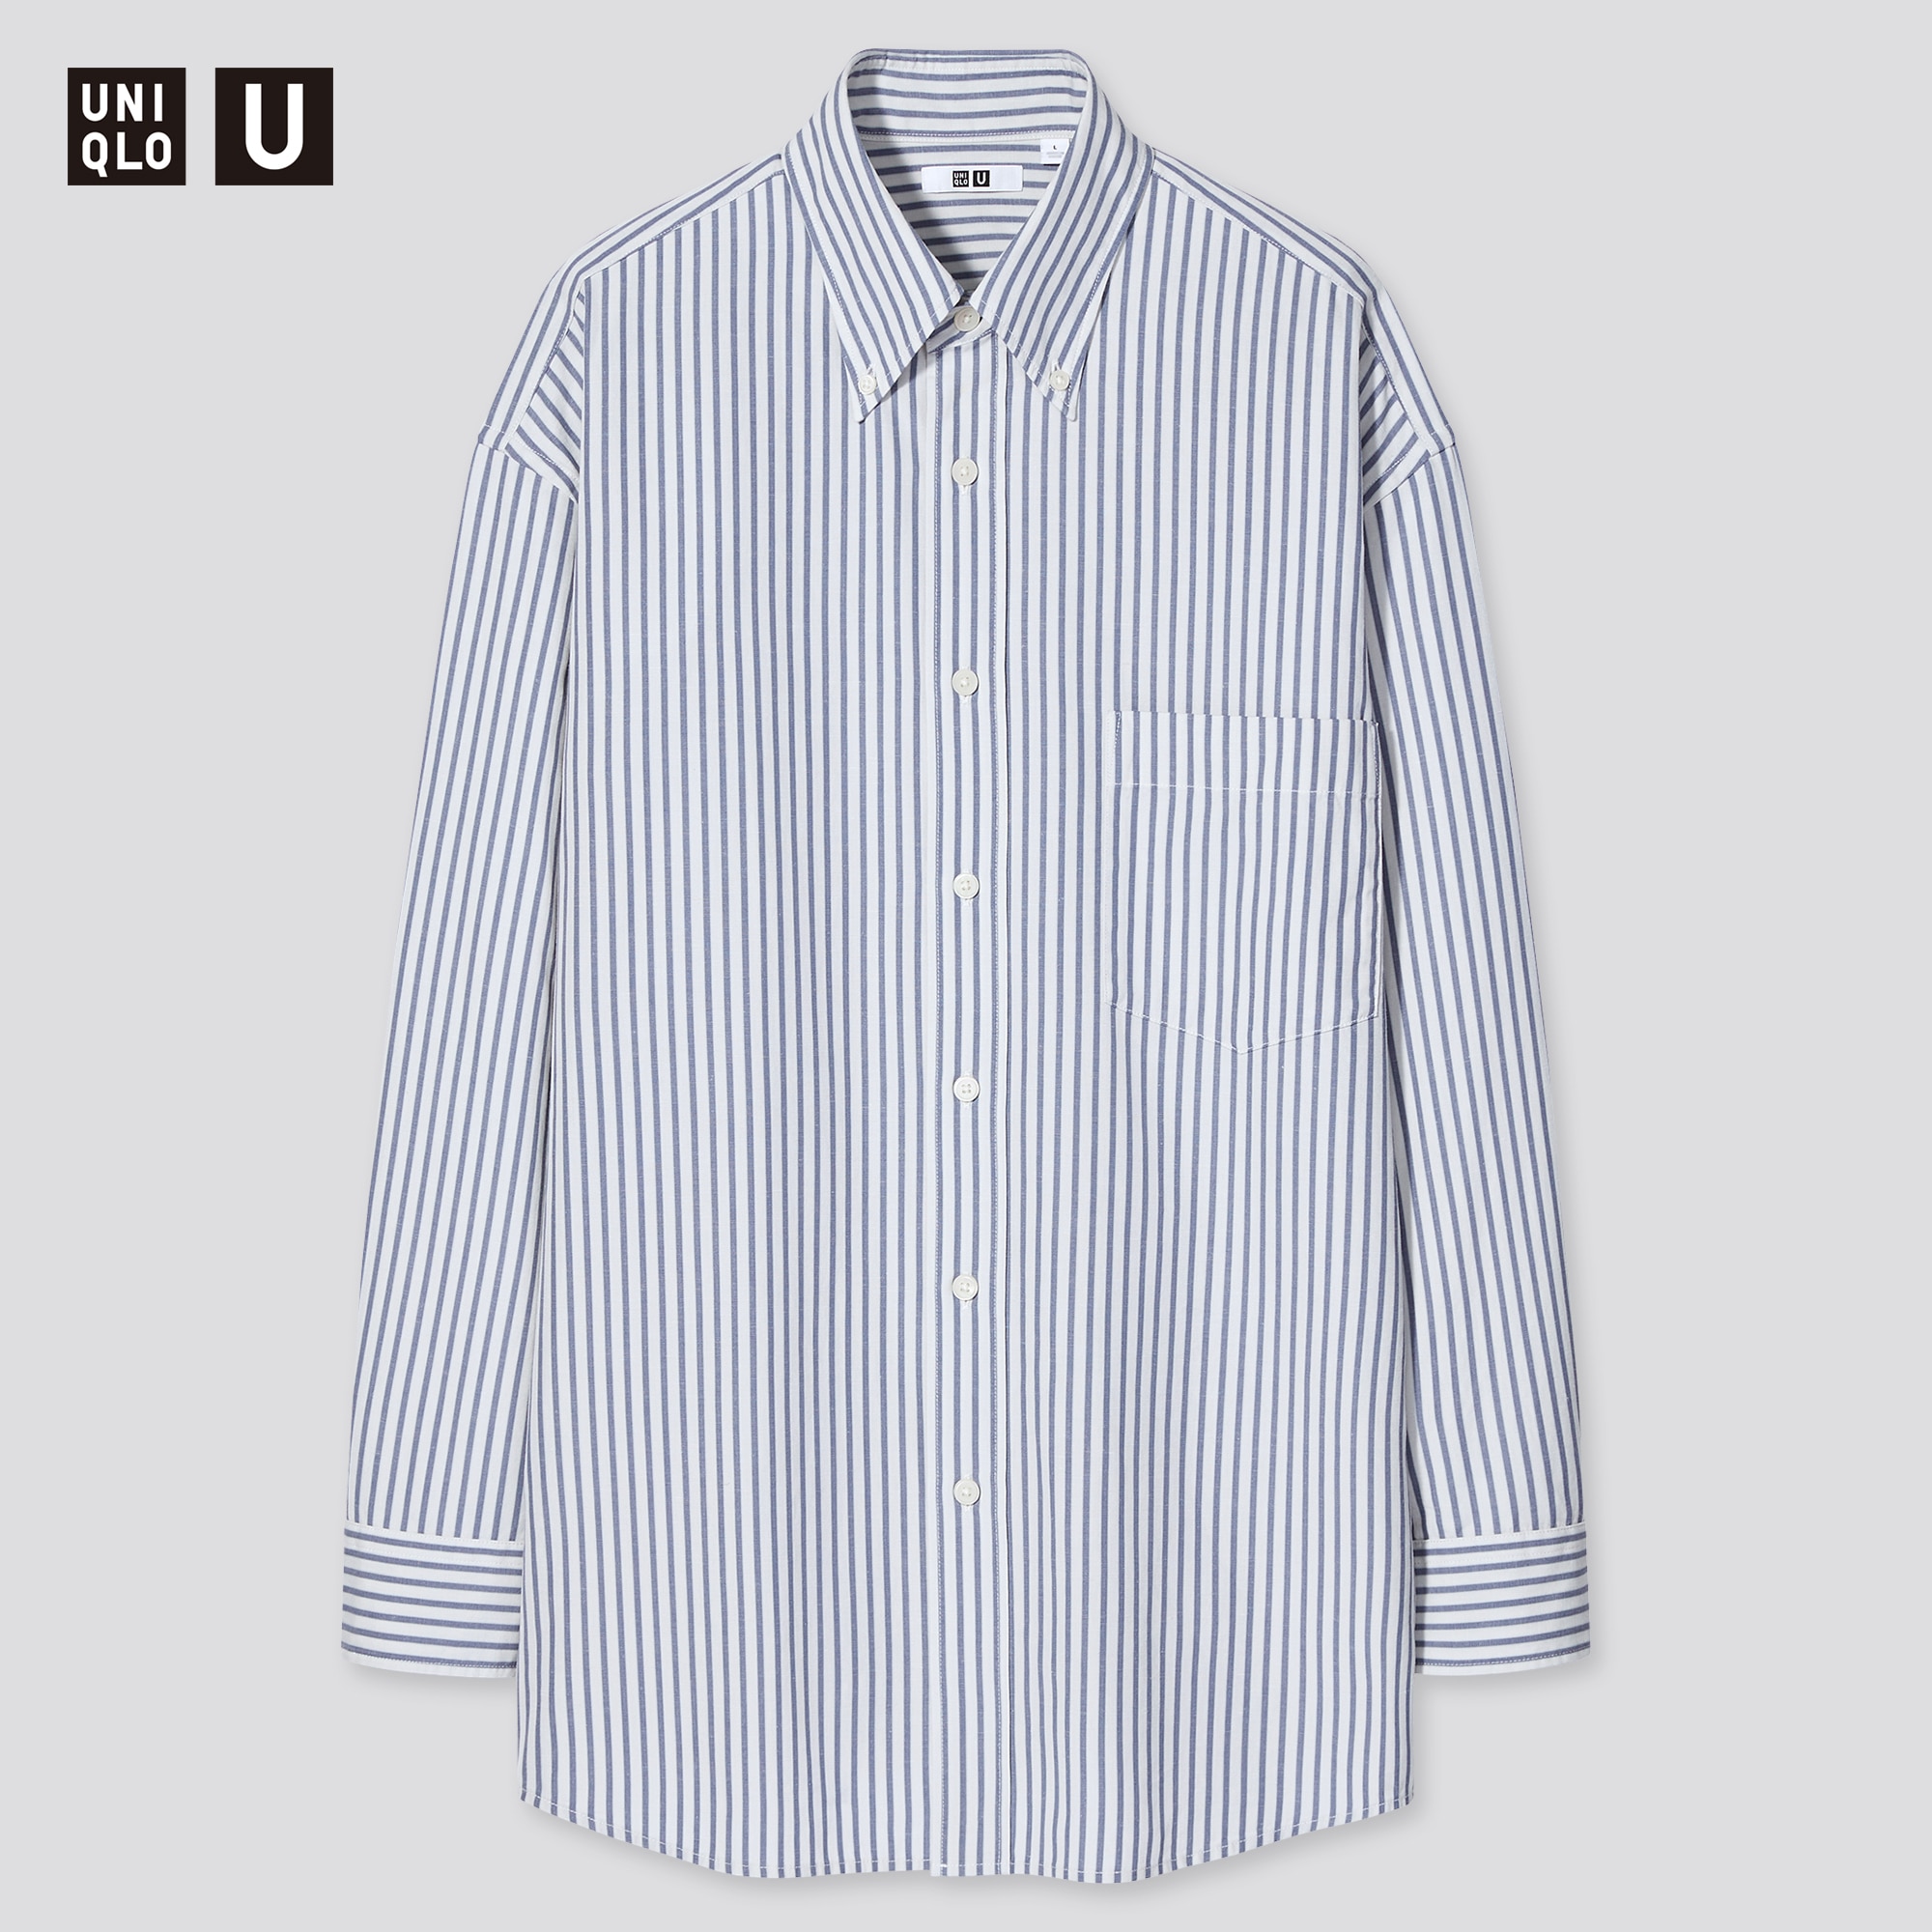 「ワイドフィットストライプシャツ（ボタンダウンカラー・長袖）、ウールスリムフィットパンツ」の着用コーディネート| ユニクロ